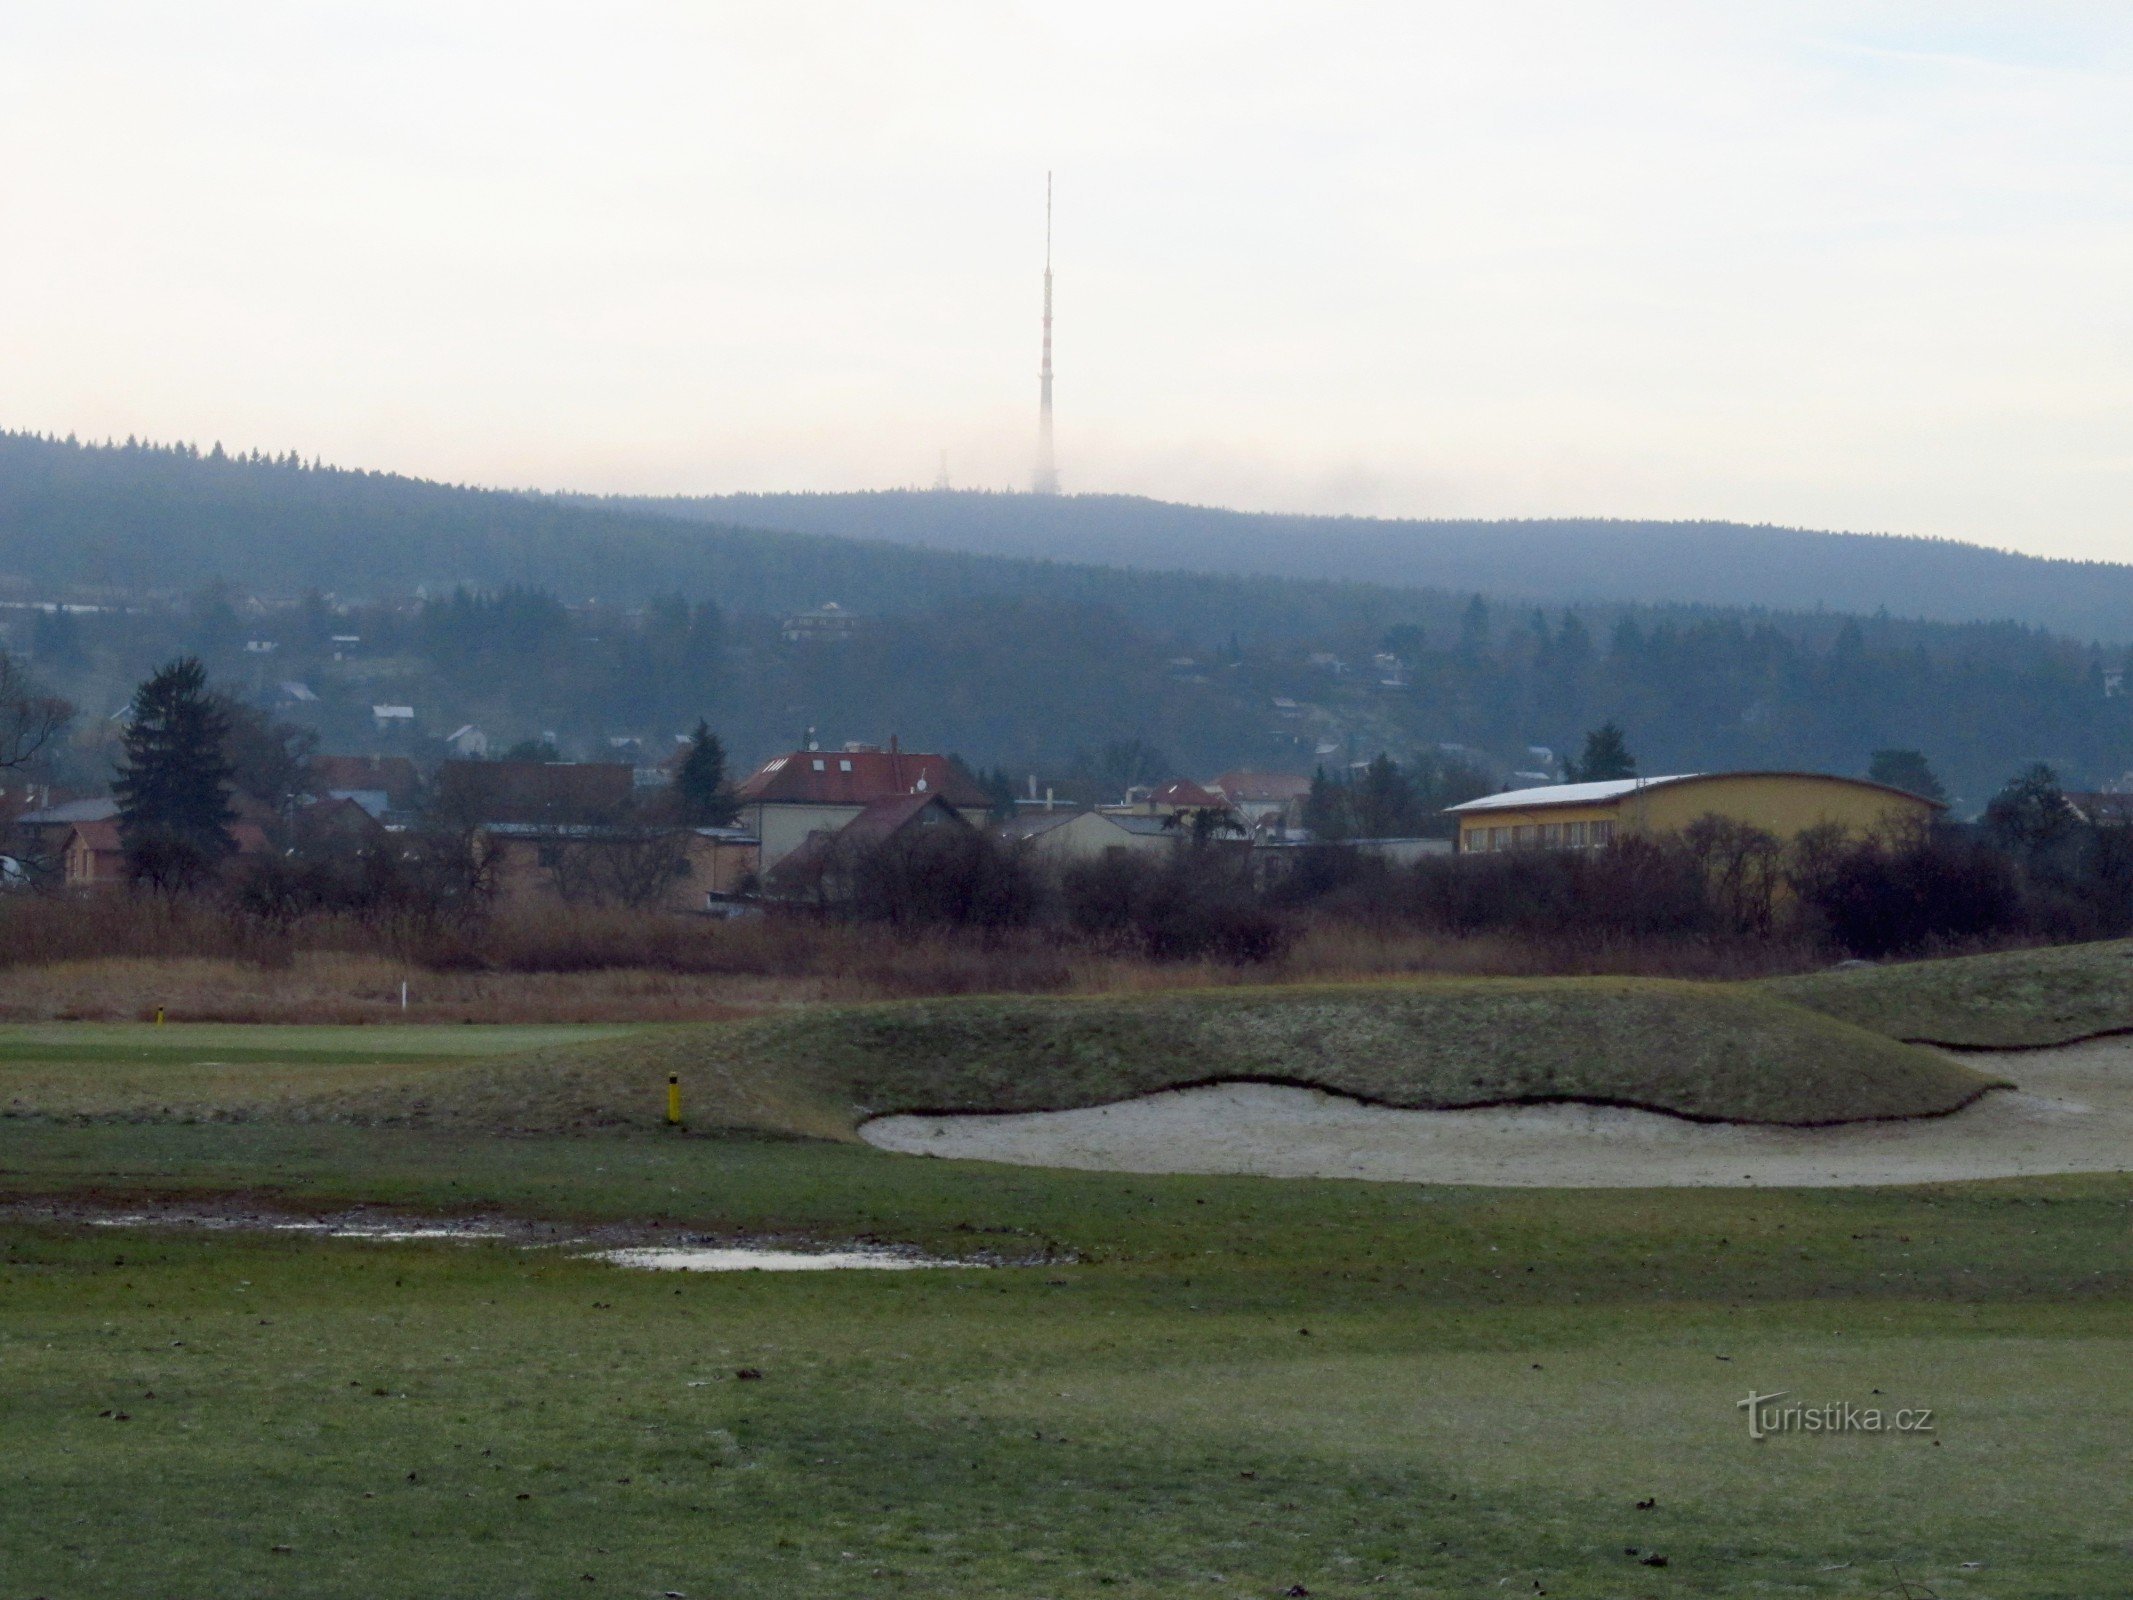 02 Peluňka golfbaan, Cukrák op de achtergrond